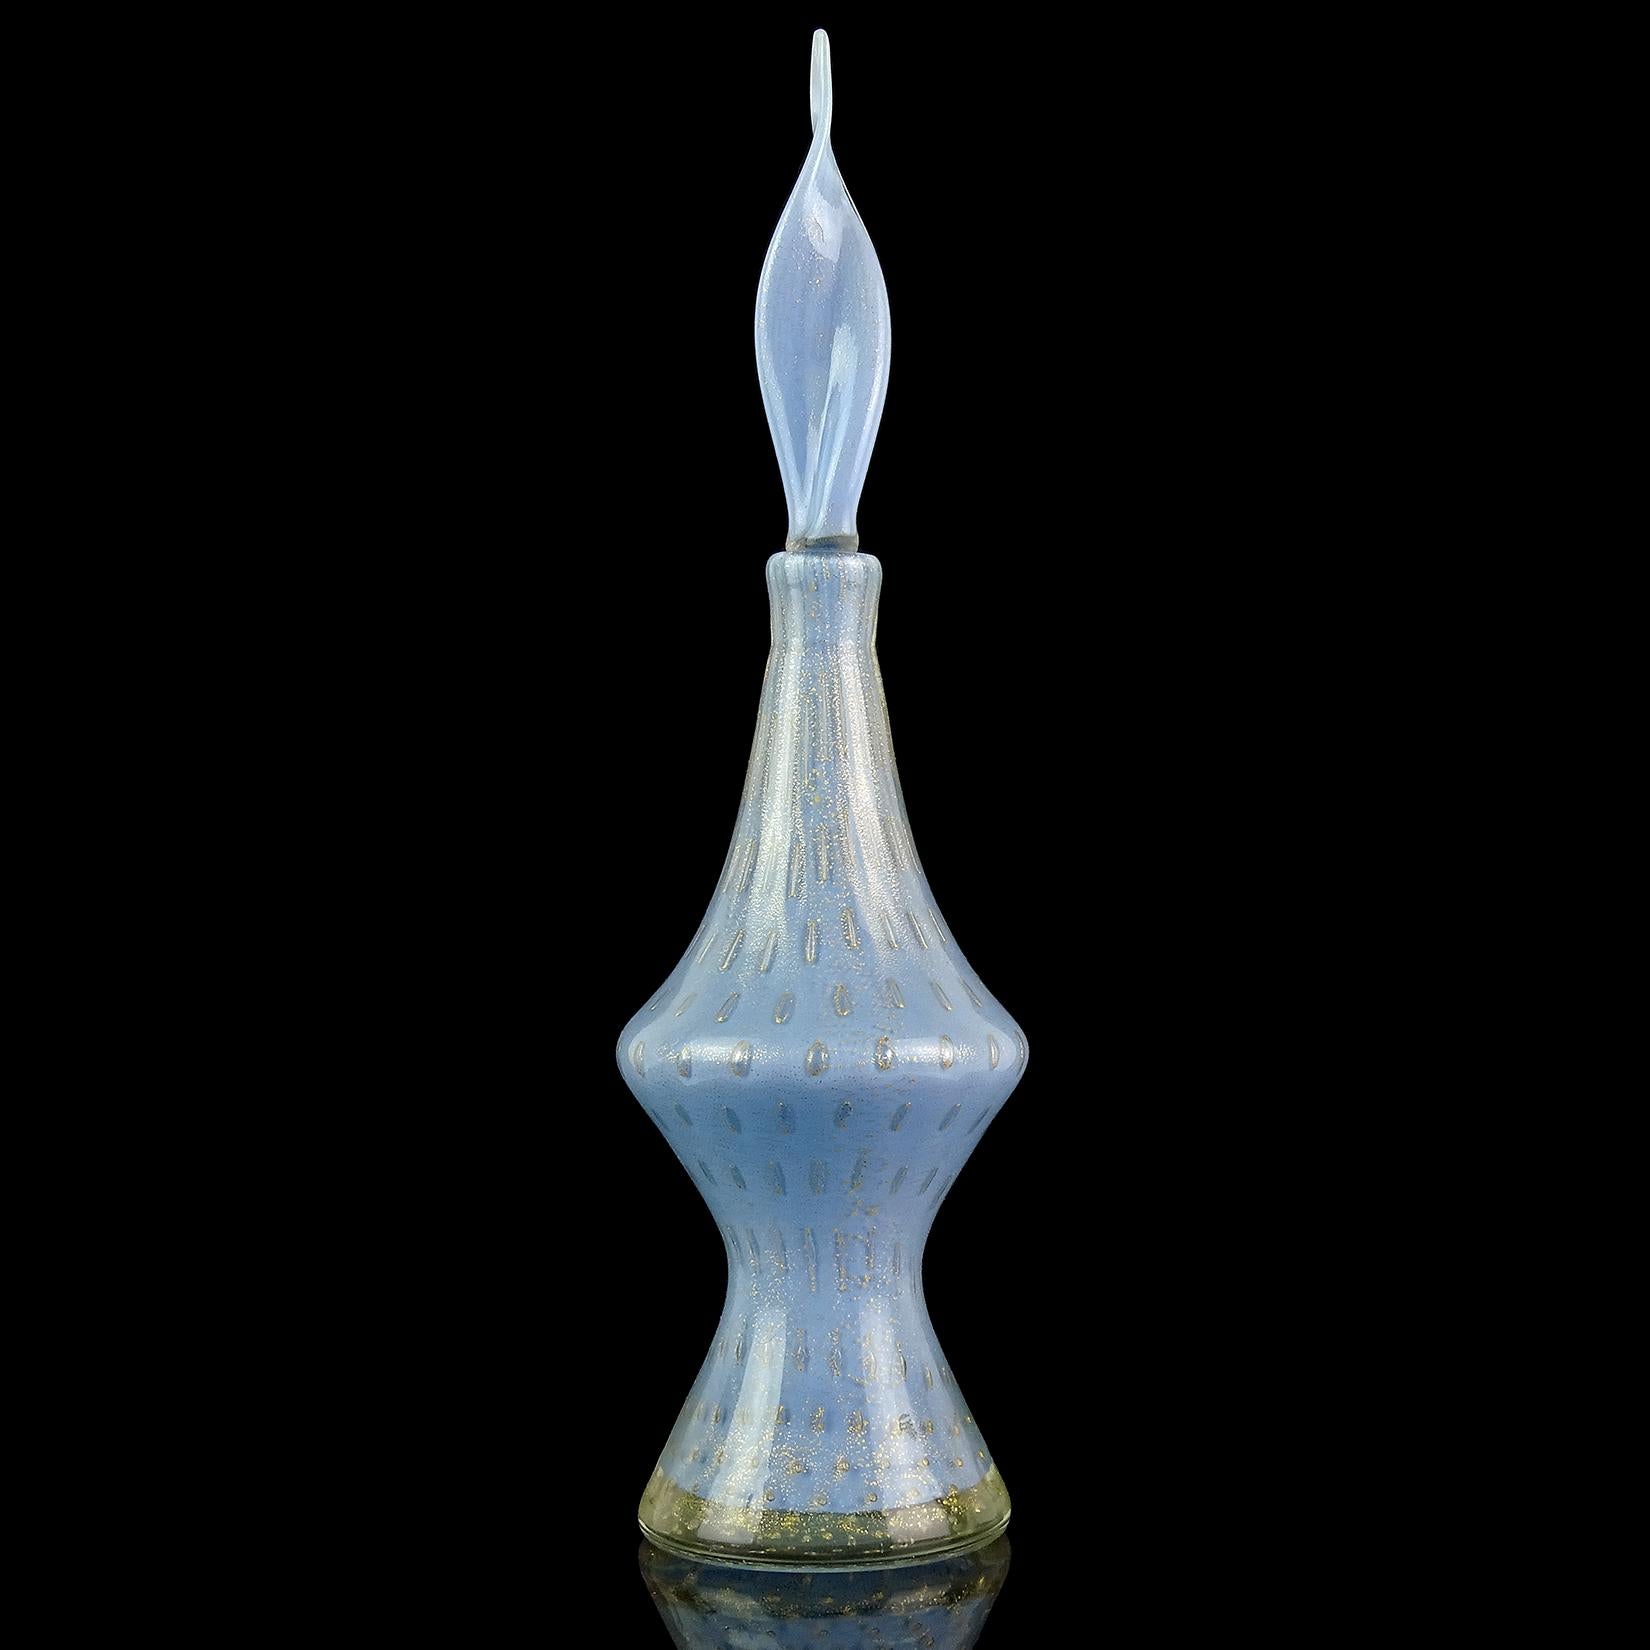 Precioso decantador vintage de frasco de perfume de cristal artístico italiano de Murano soplado a mano de color azul empolvado, con burbujas controladas y motas doradas. Documentado al diseñador Alfredo Barbini, hacia la década de 1950. Botella con